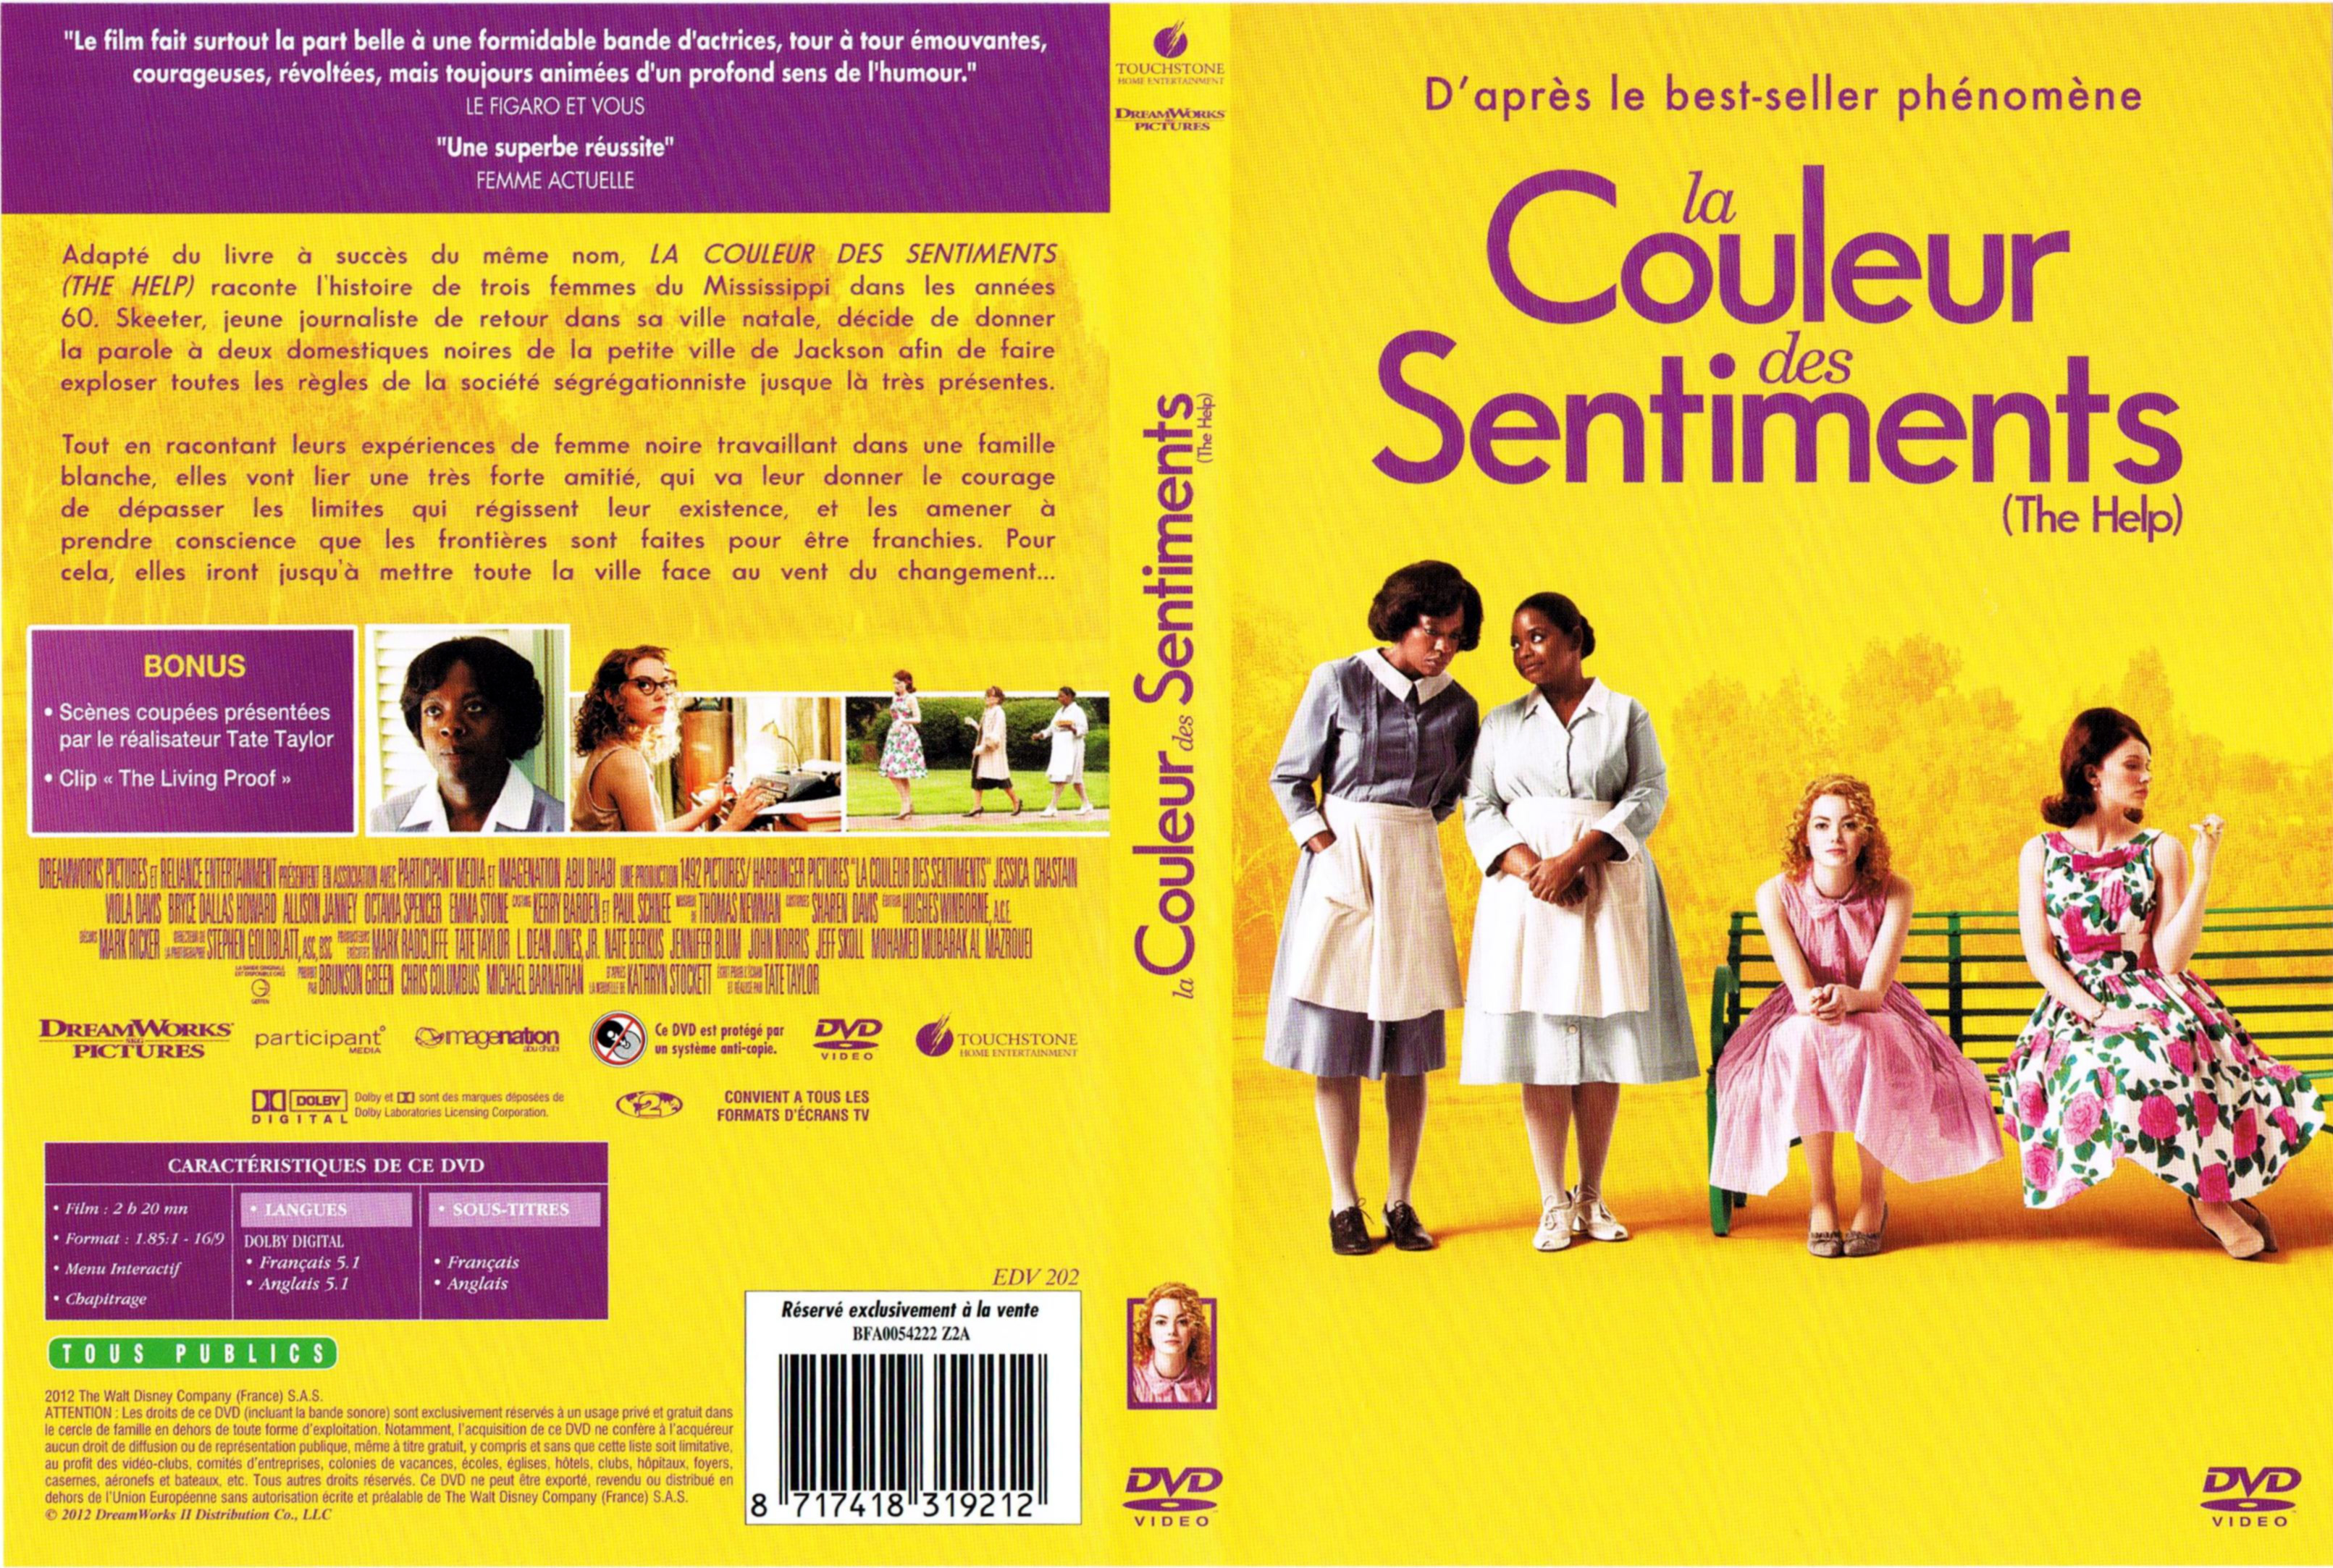 Jaquette DVD de La couleur des sentiments - Cinéma Passion